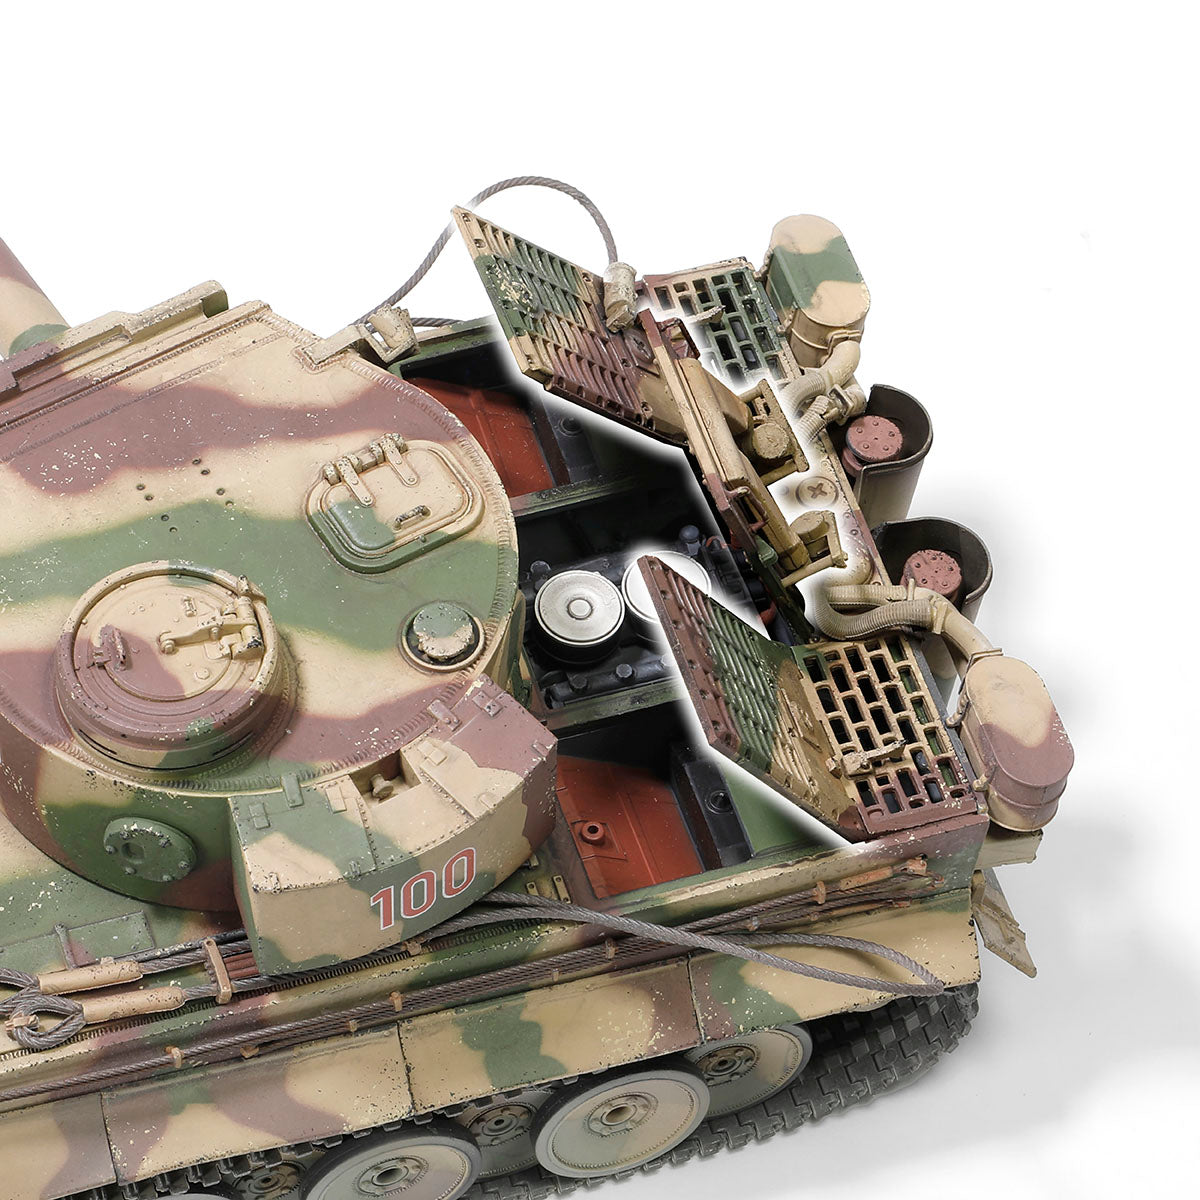 Forces OF Valor Carro pesante tedesco Sd.Kfz.181 PzKpfw VI Tiger Ausf. E (Tiger, modello di produzione iniziale)